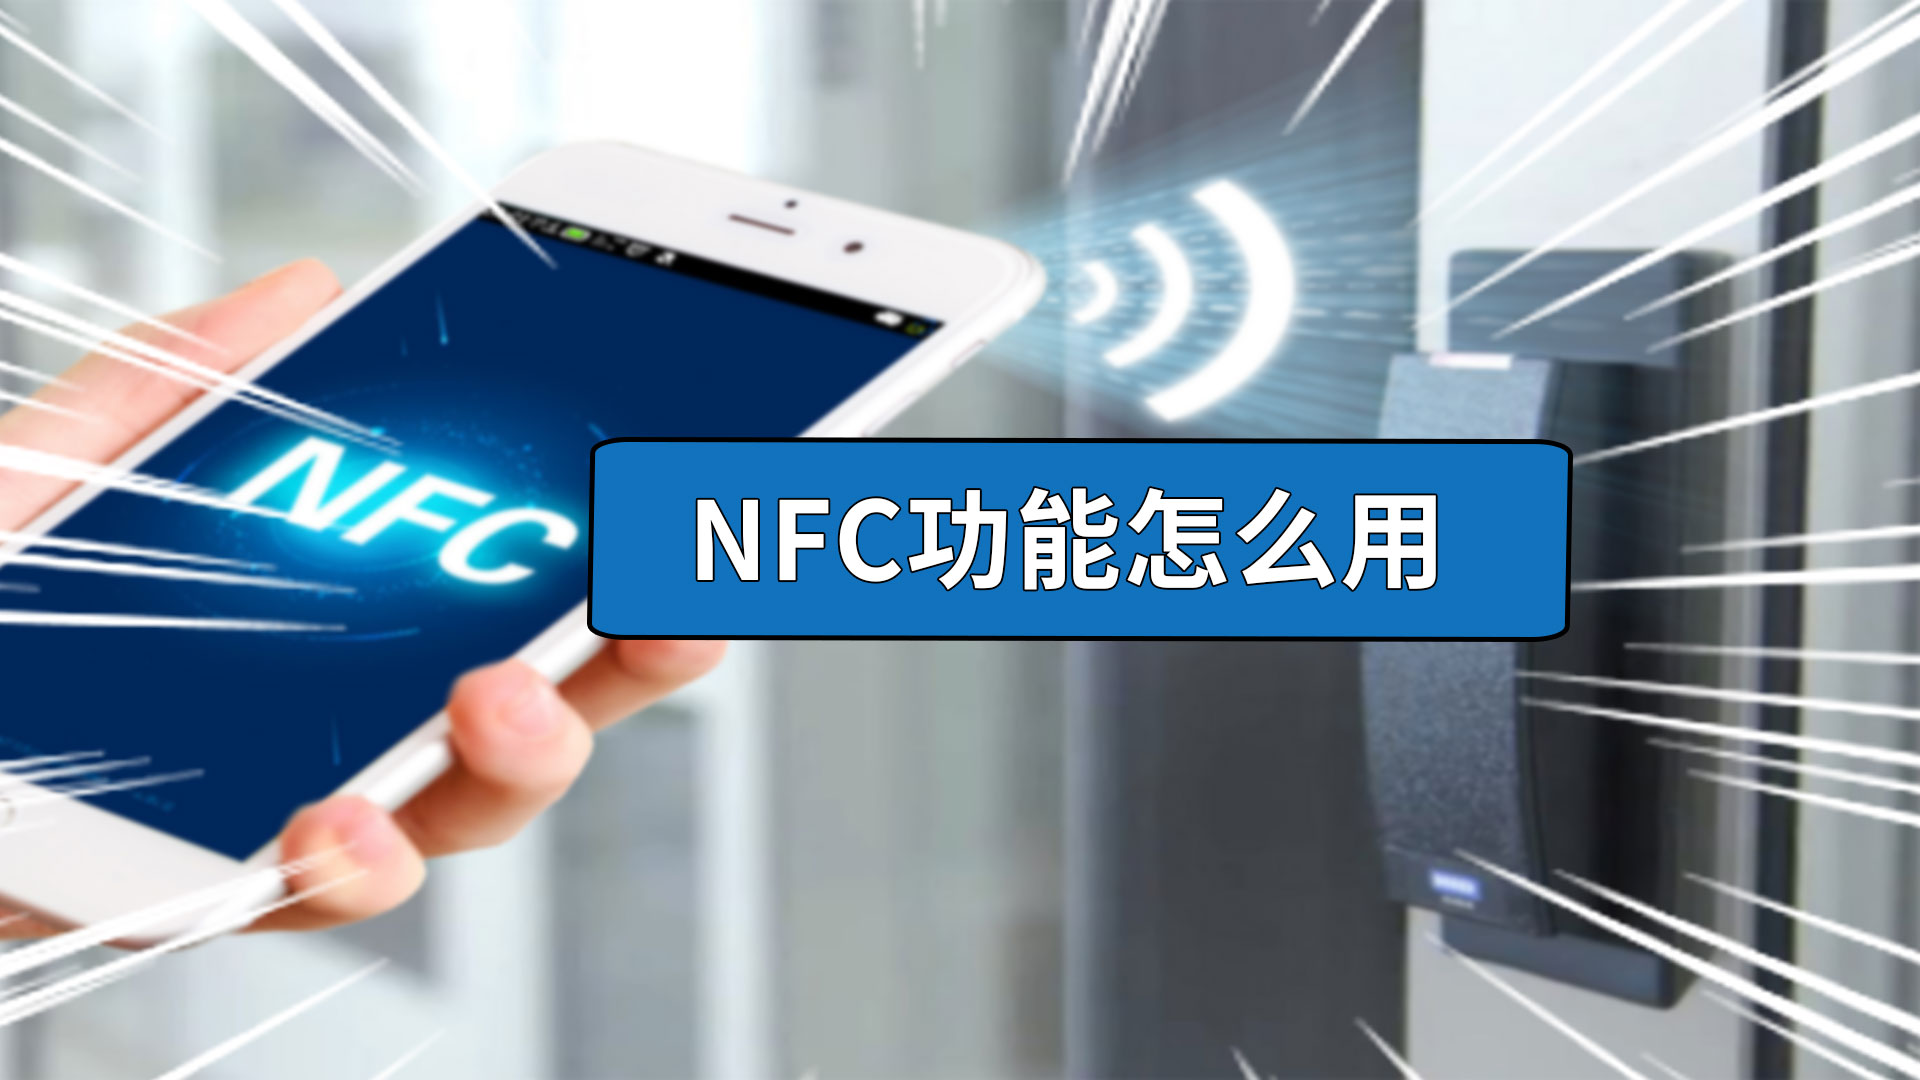 nfc功能怎么用 手机nfc功能怎么用